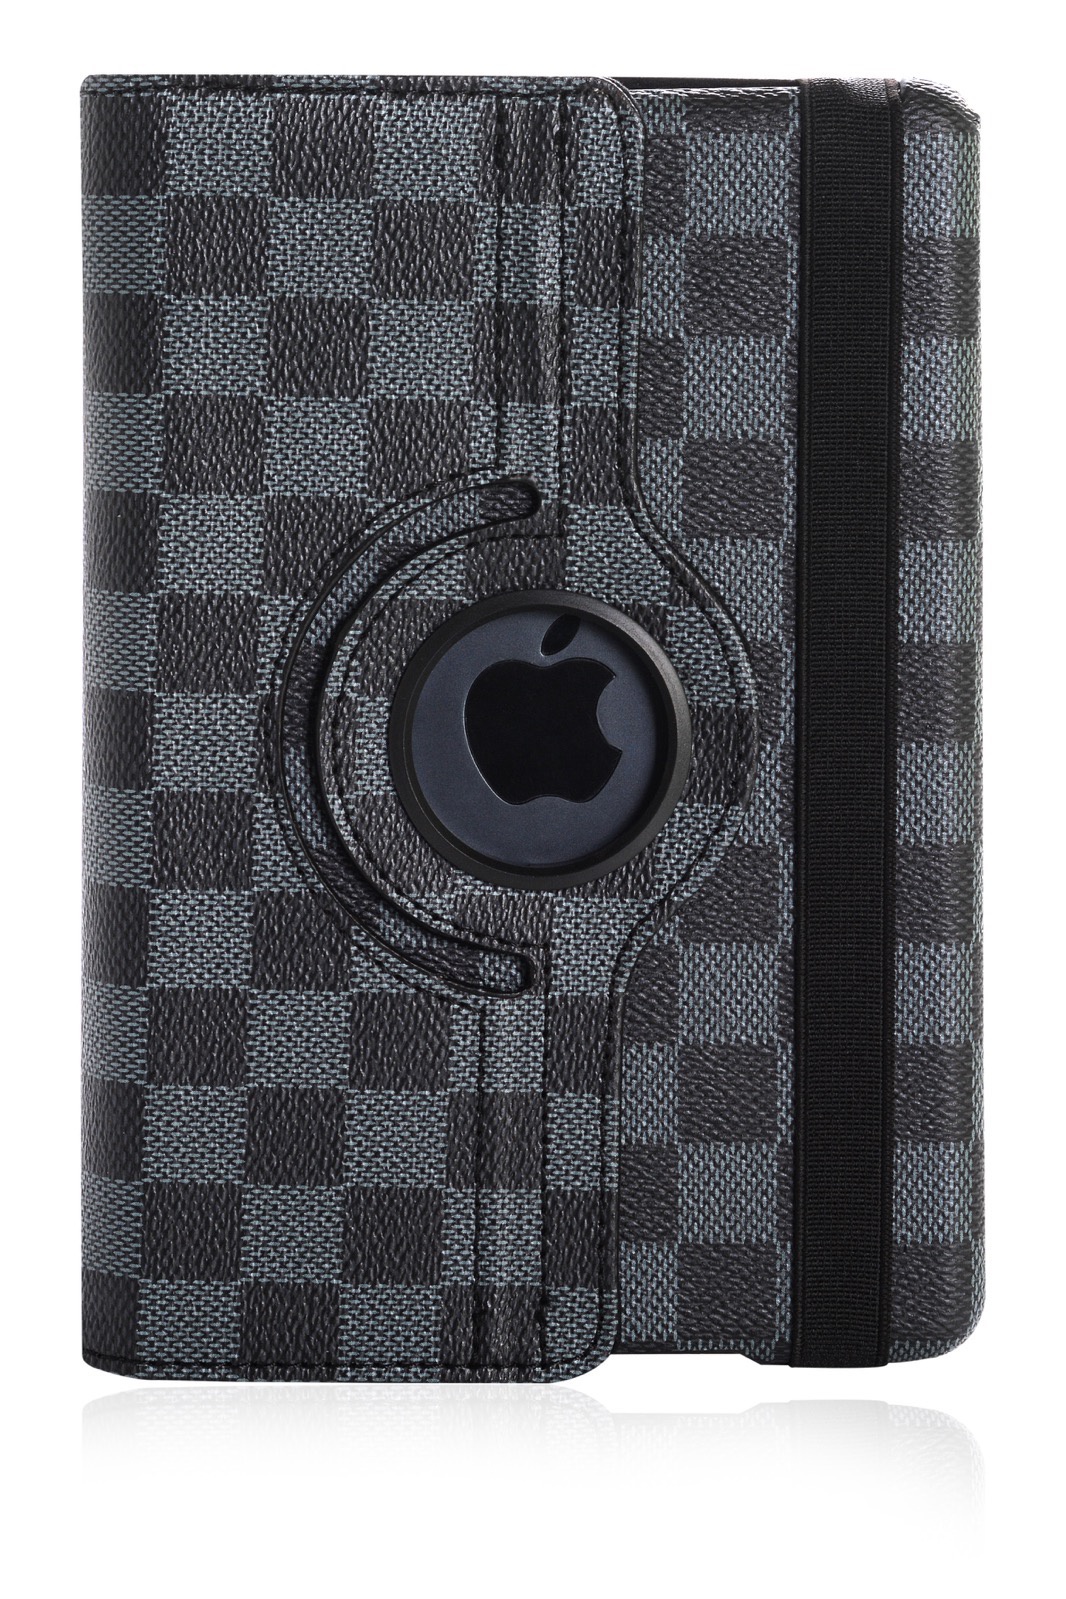 фото Чехол для планшета Gurdini книжка 410064 поворотный 360 в шашечку для Apple iPad mini 1/2/3 7.9", черный